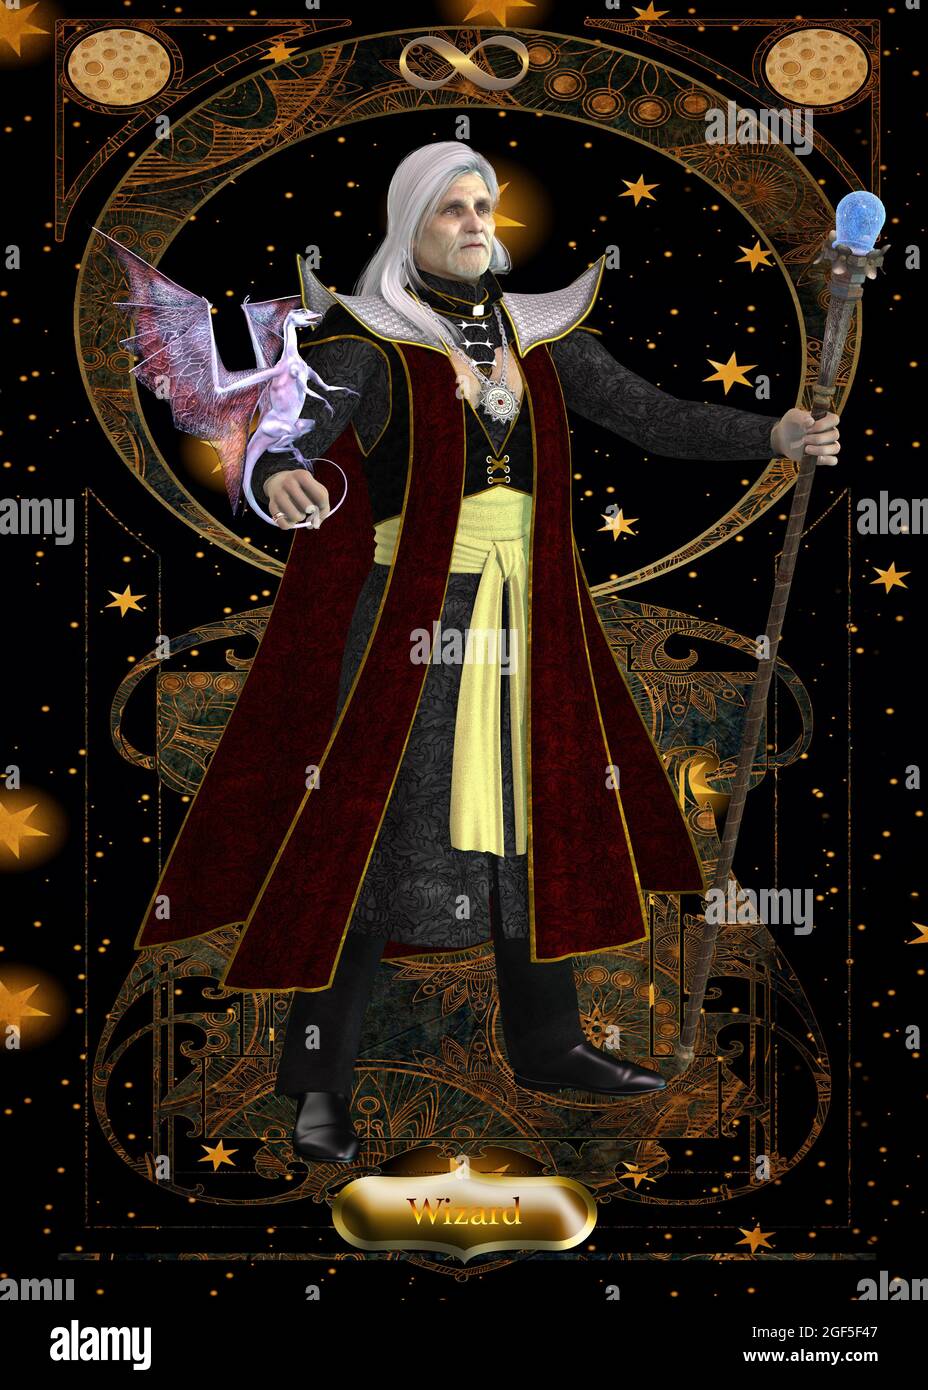 Scheda Wizard - UN mago è un stregone che lancia incantesimi soprannaturali e fa pozioni magiche. Foto Stock